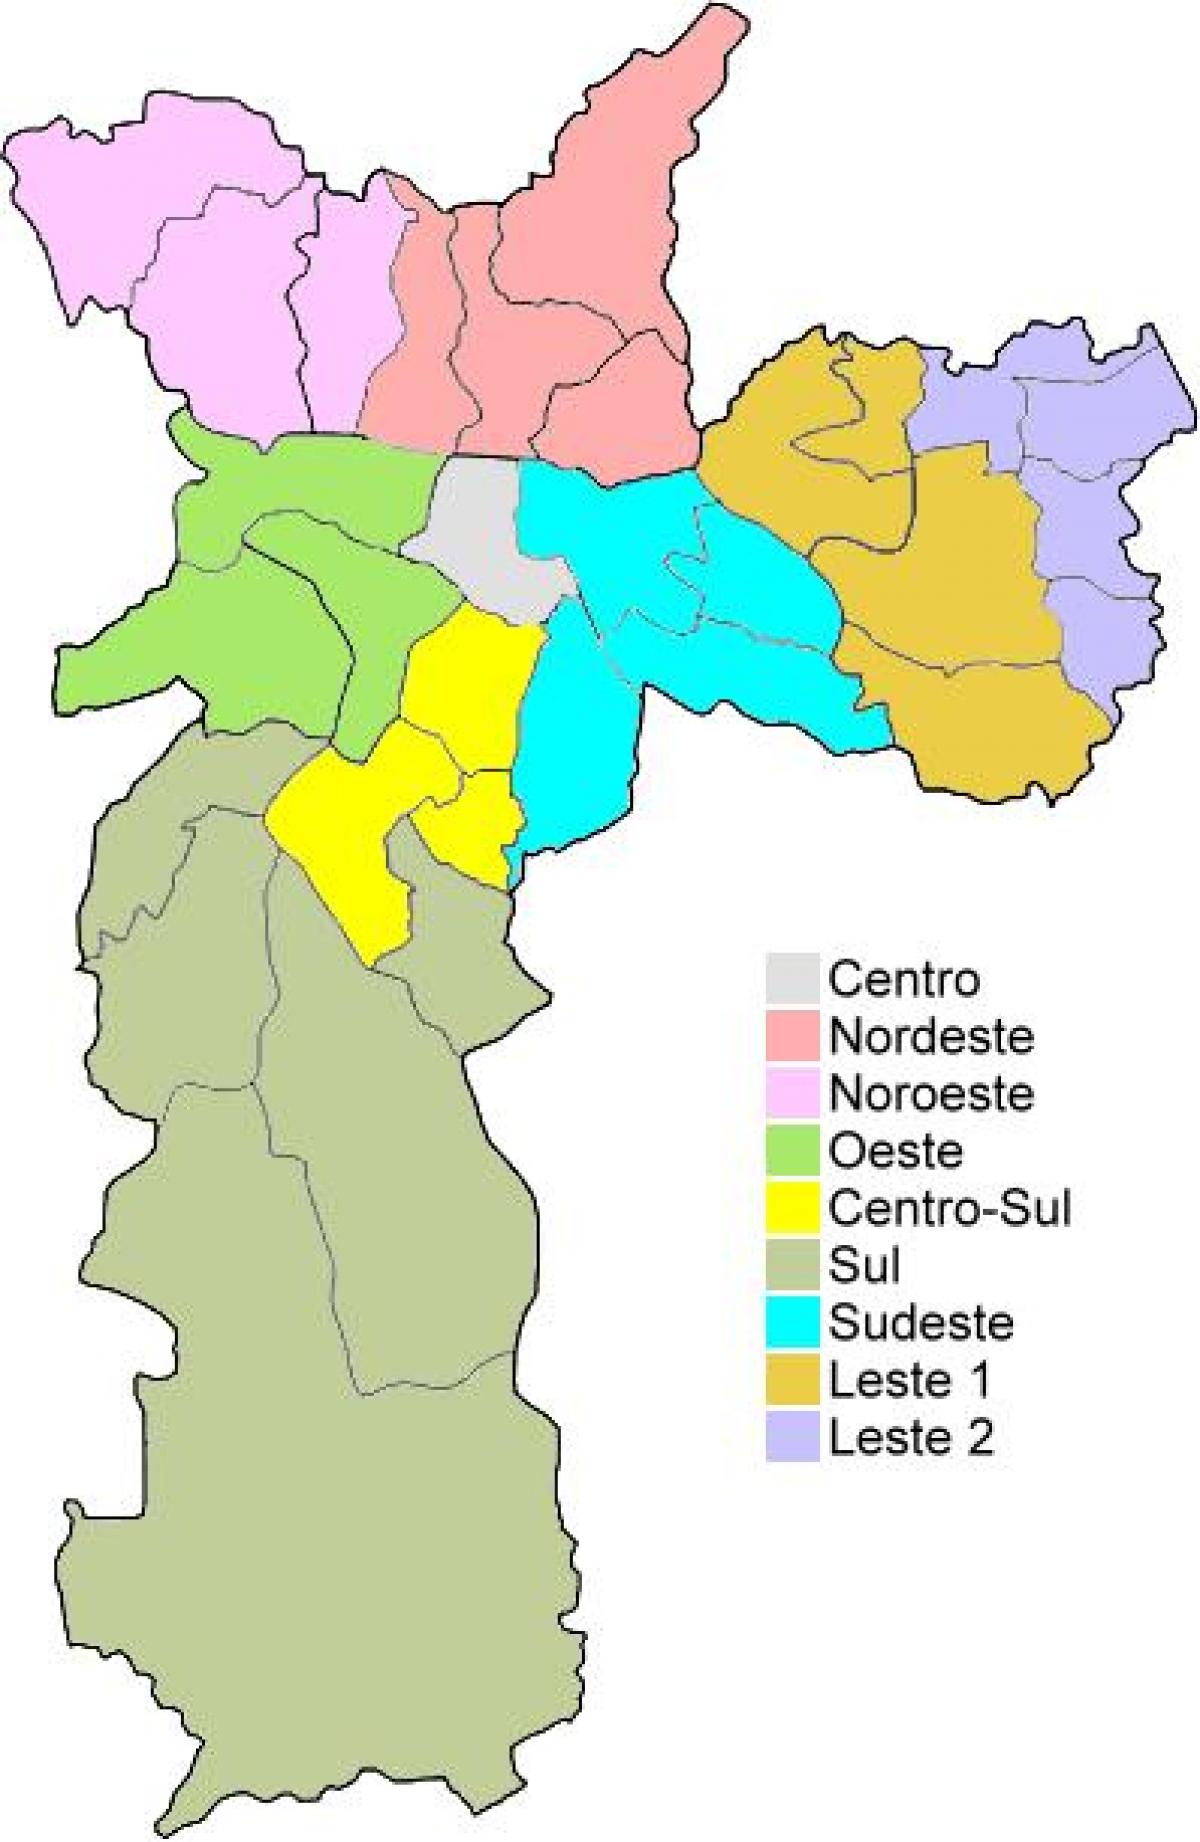 Χάρτης των διοικητικών περιφερειών στο Σάο Πάολο